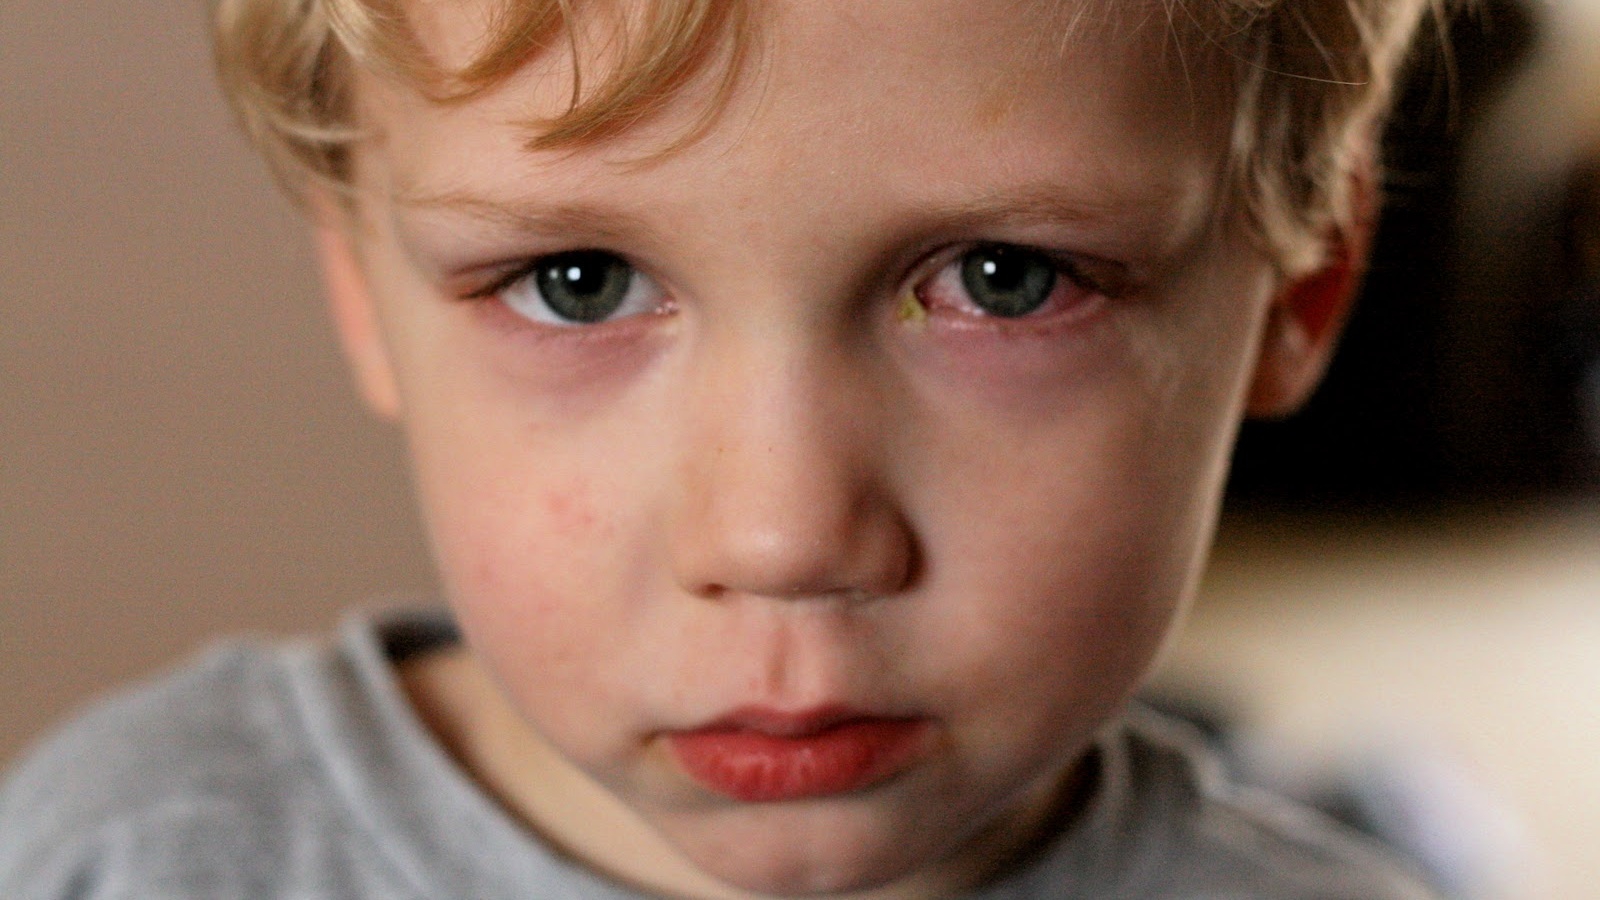 Sưng mí mắt dưới là triệu chứng của vấn đề gì liên quan đến trẻ sơ sinh?
